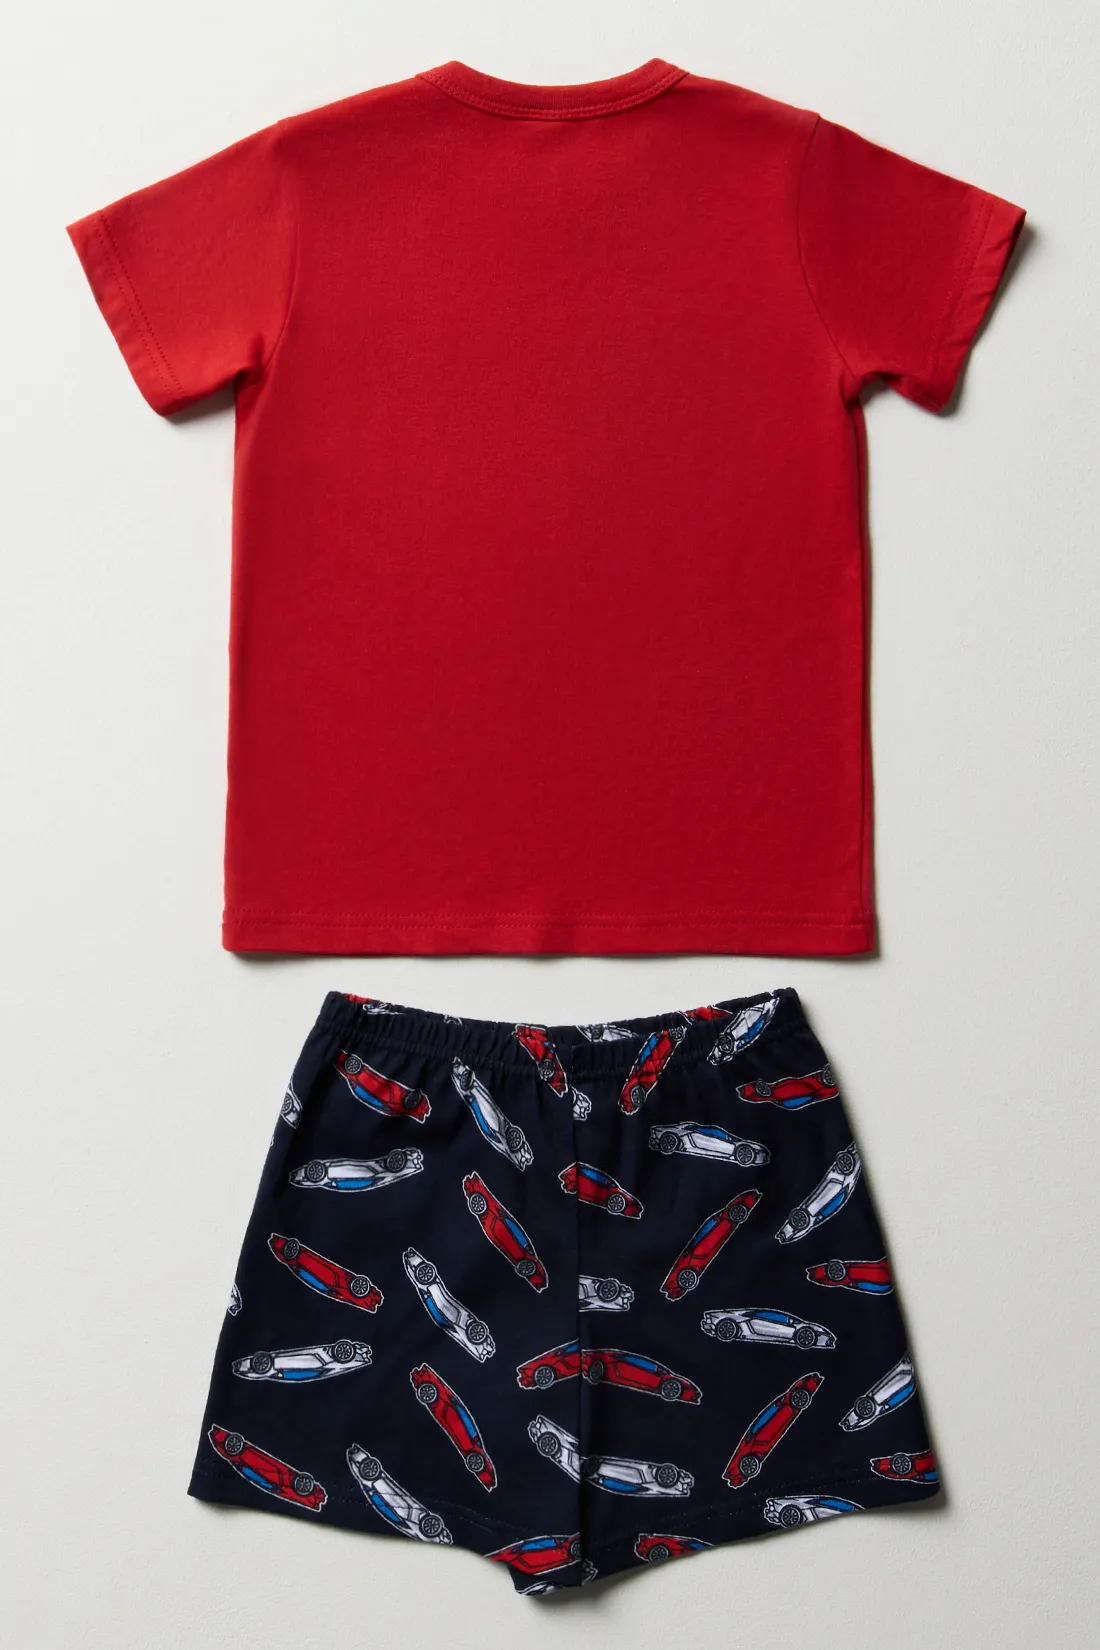 Racing car short sleeve pyjamas red - BOYS 2-10 YEARS Sleepwear | Ackermans